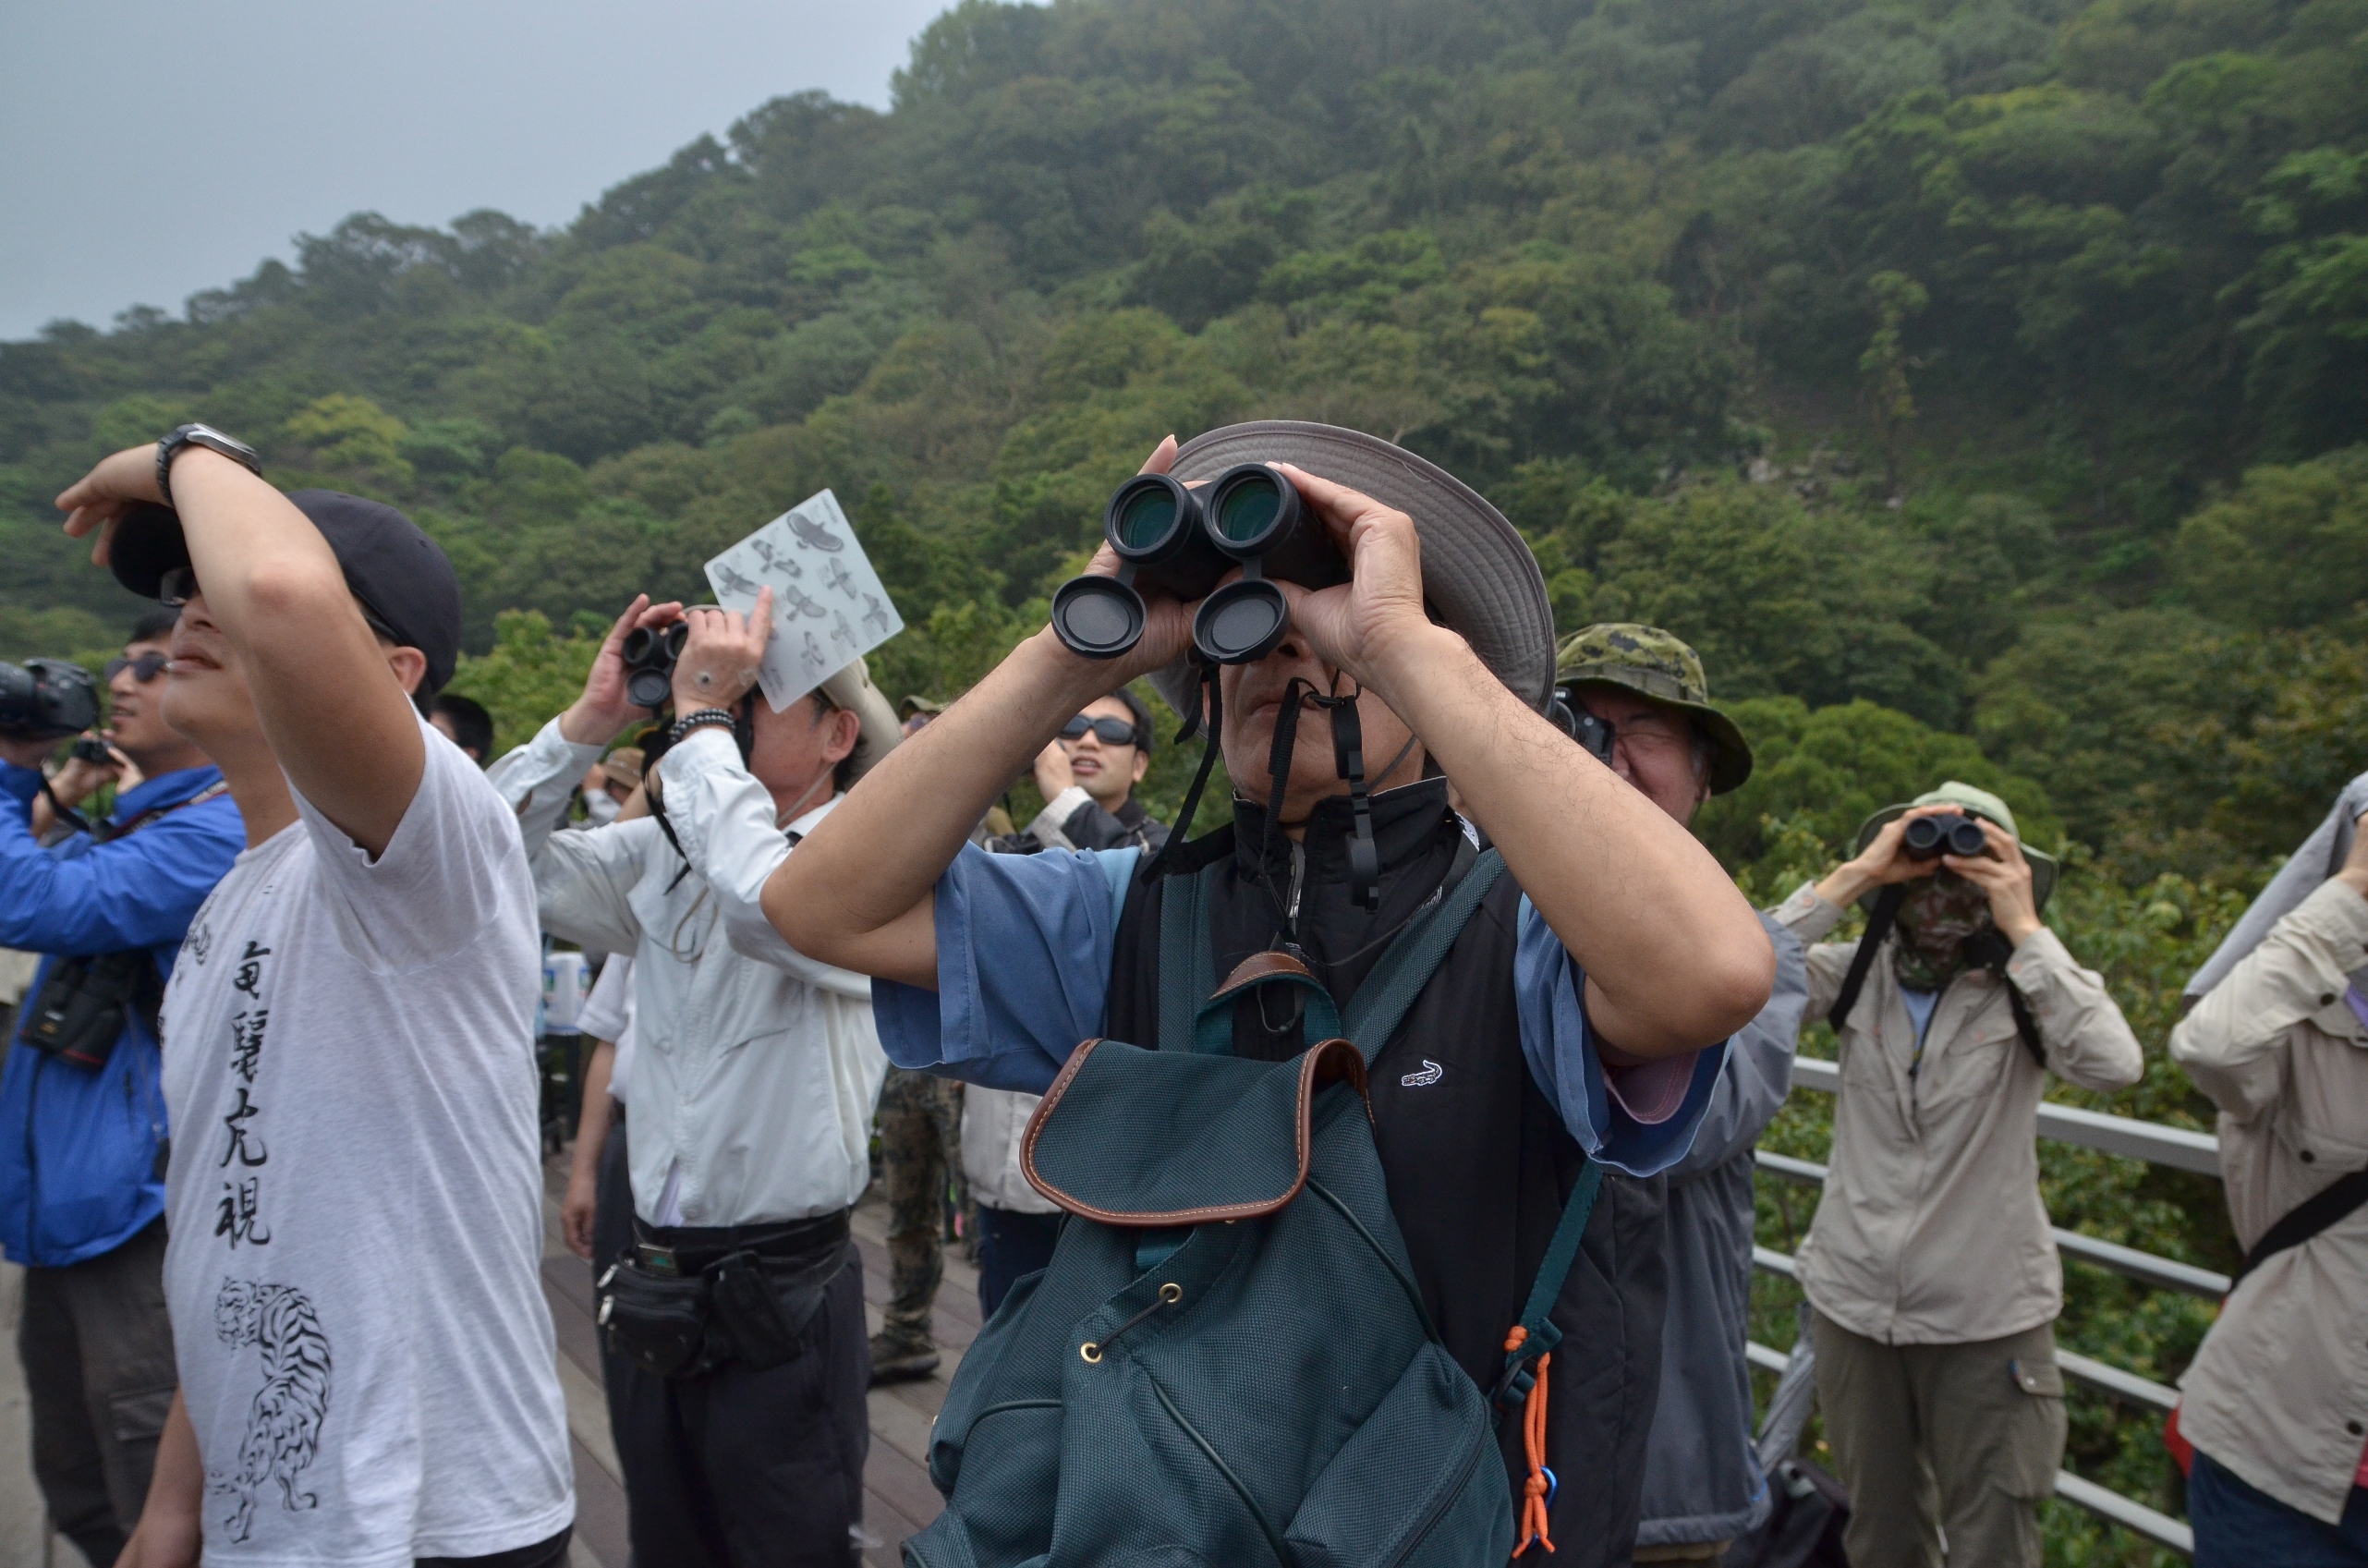 台北鳥會導覽老師帶領民眾觀察猛禽台北市野鳥學會提供